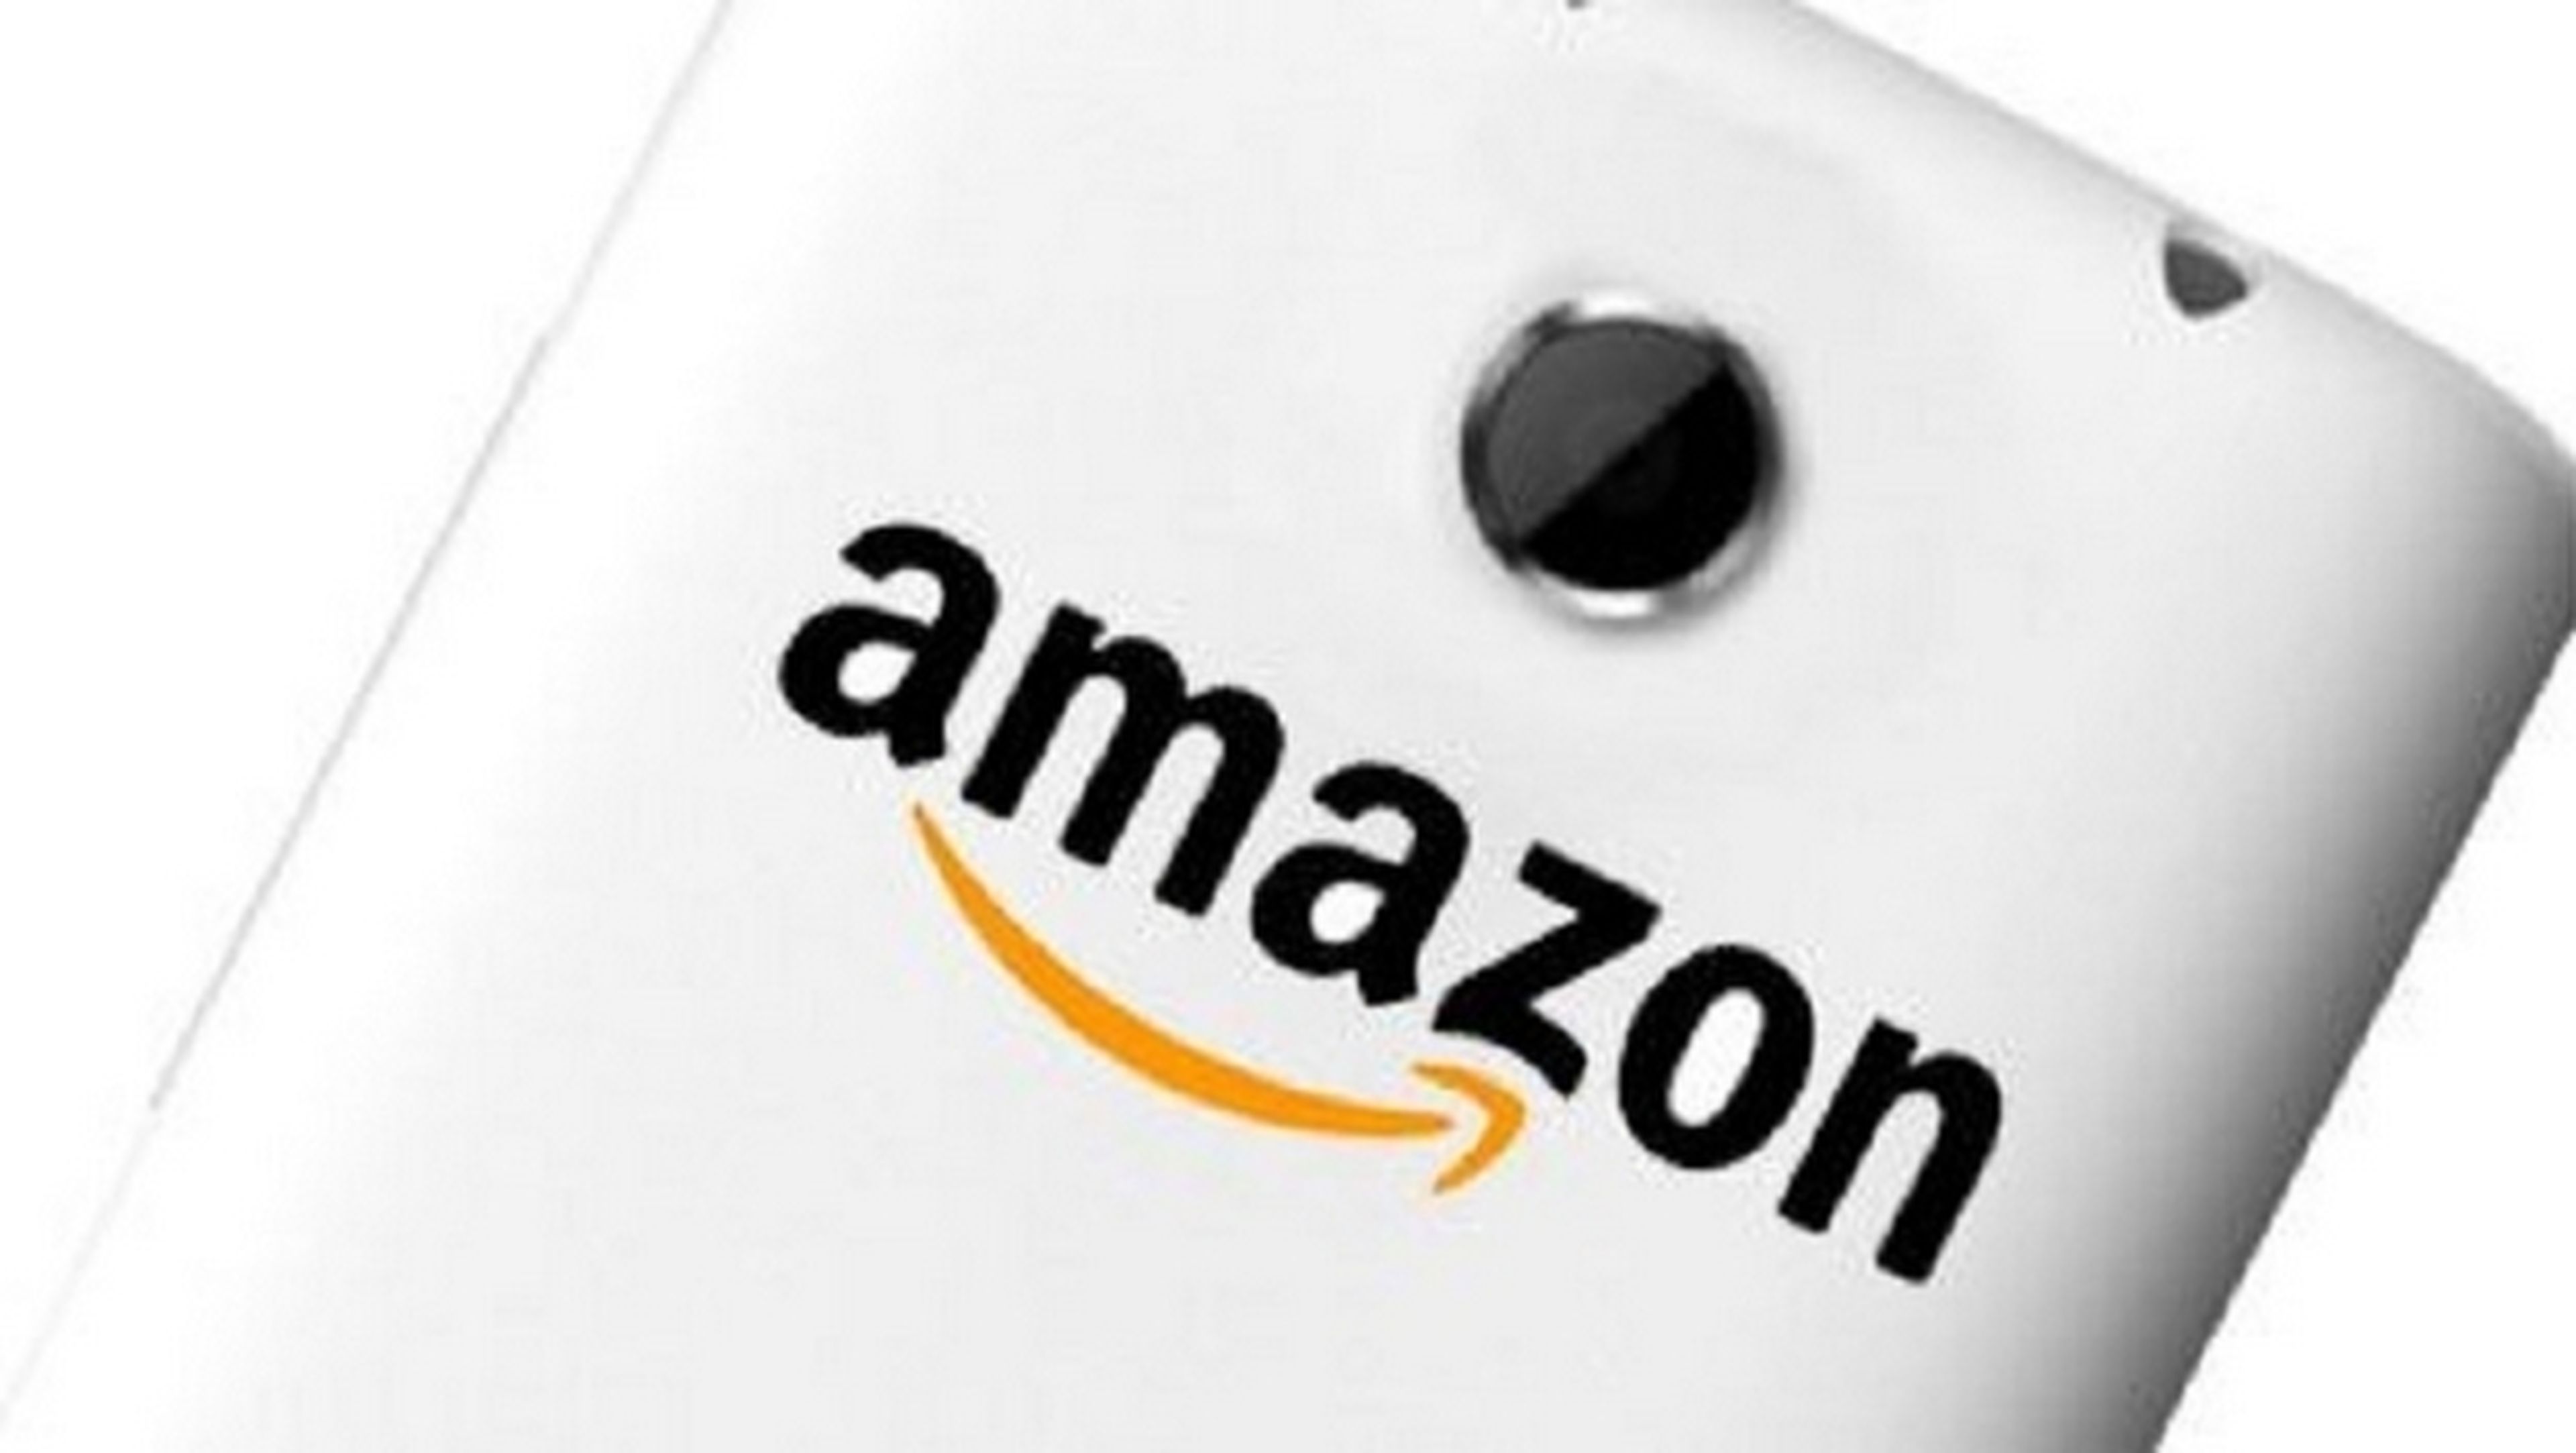 El smartphone de Amazon podría presentarse en junio, y salir a la venta en septiembre